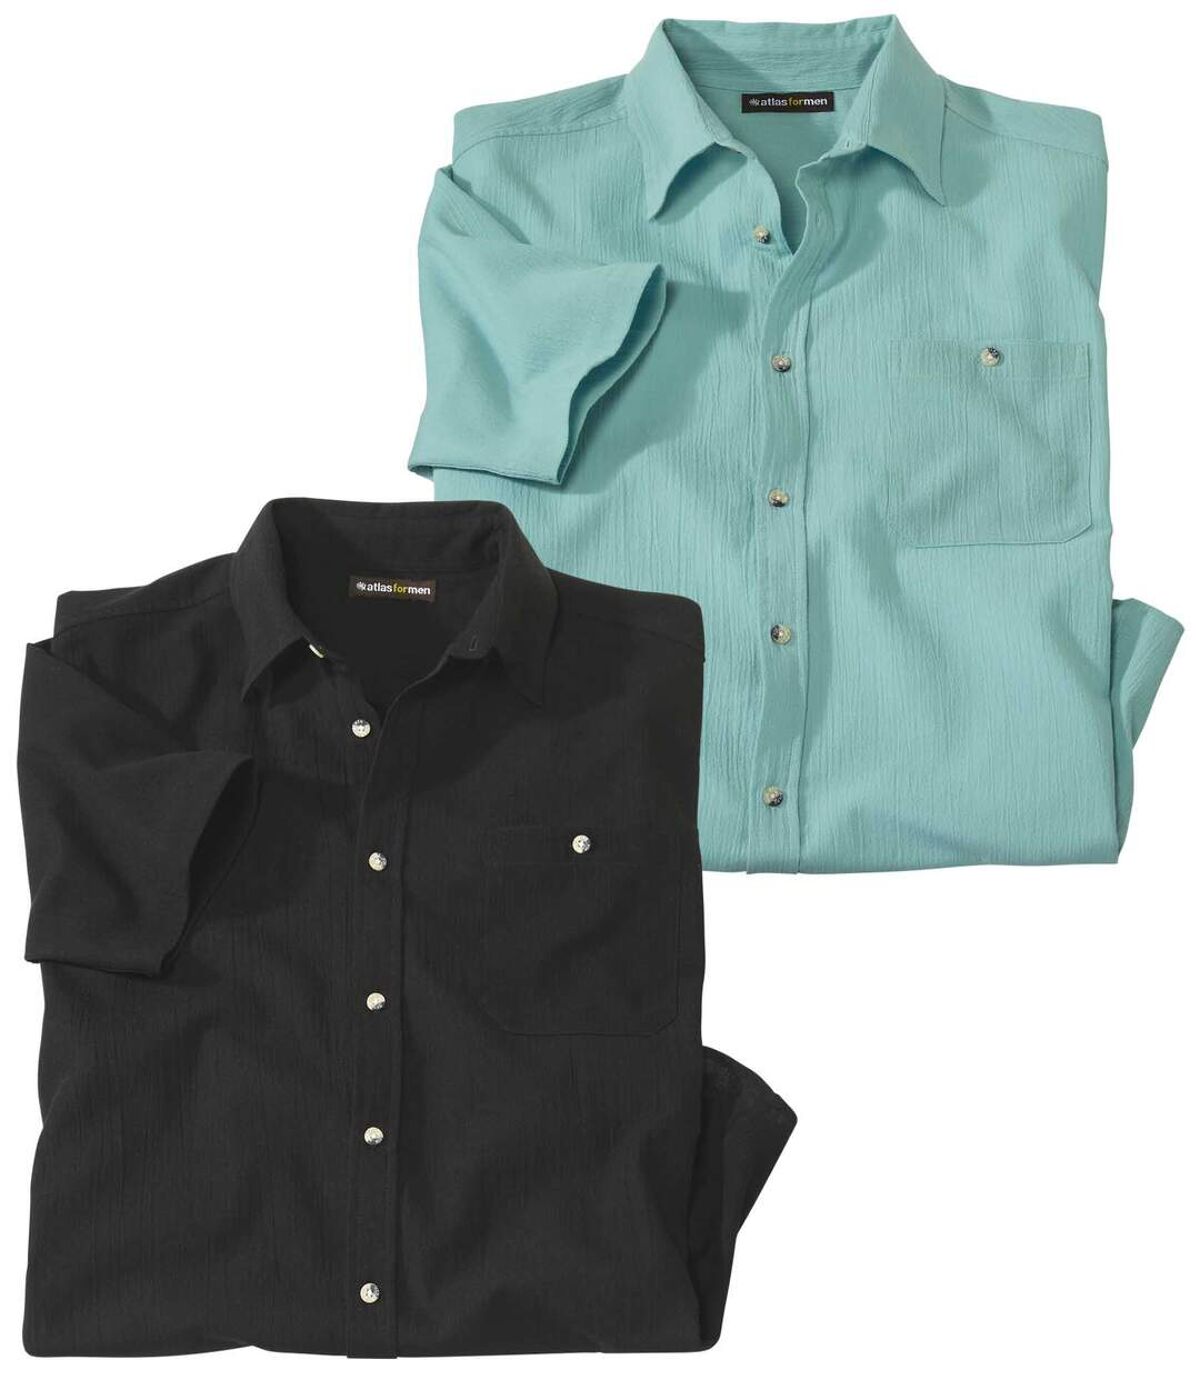 Pack of 2 Men's Short-Sleeved Shirts - Turquoise Black Atlas For Men